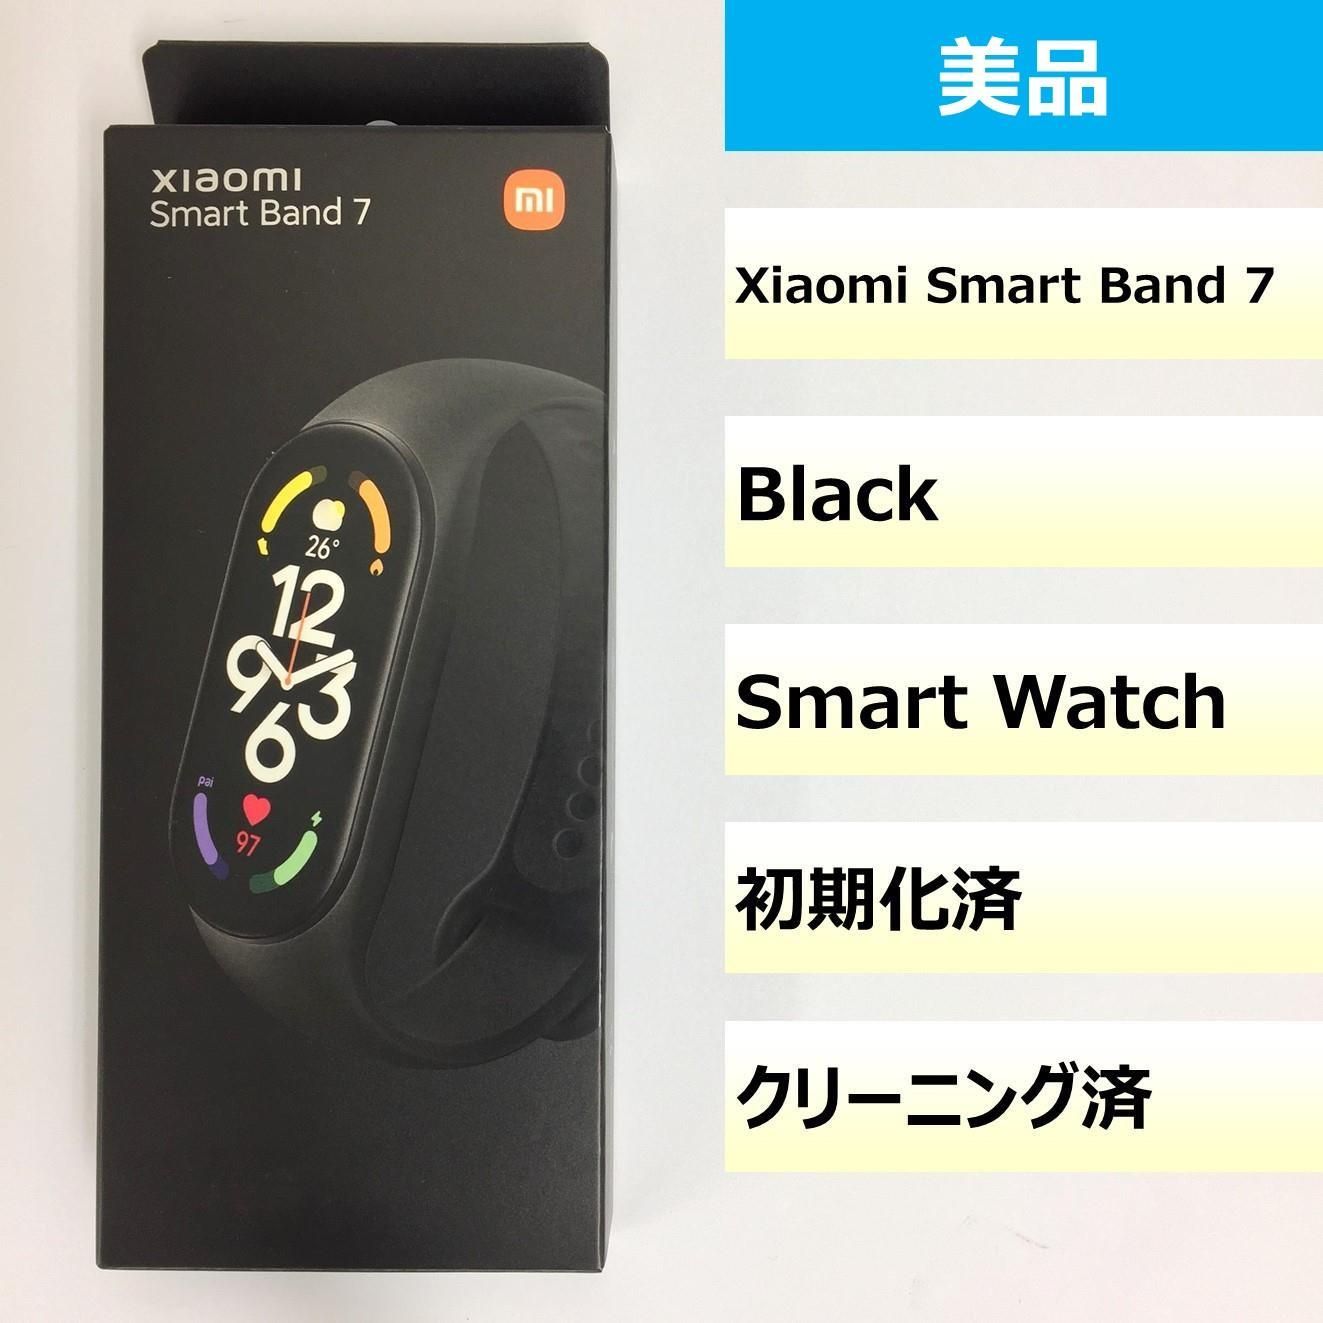 鄒主刀縲噌iaomi Smart Band 7/KKT230607089 繝｢繝舌�ｻ繝ｪ繧ｹonline shop 繝｡繝ｫ繧ｫ繝ｪ